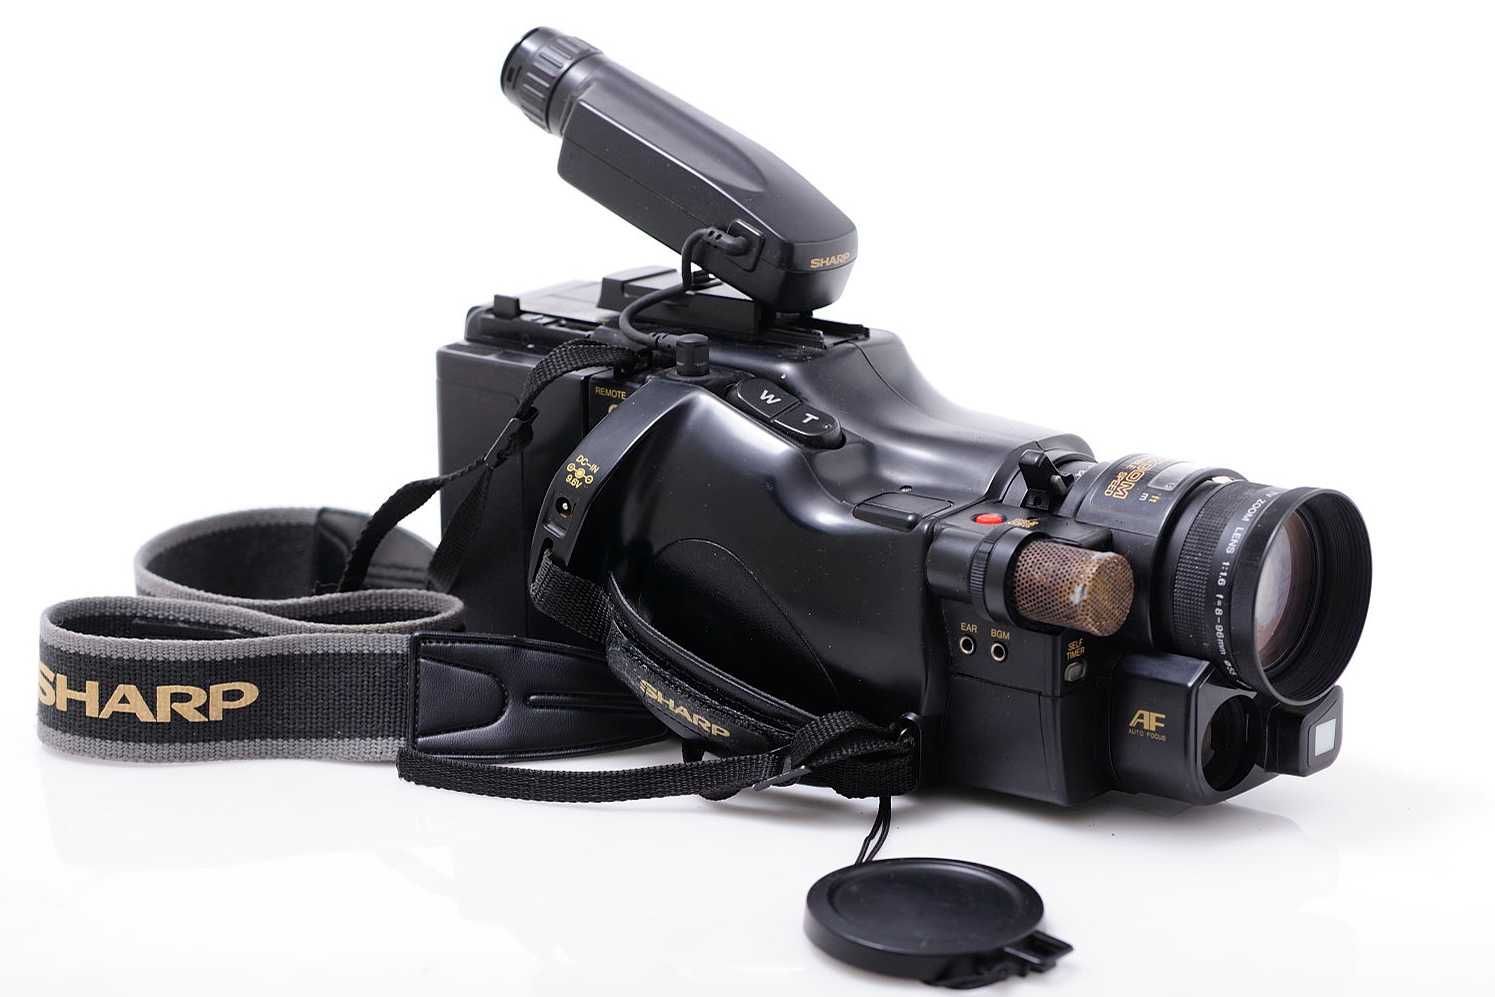 Kamera analogowa SHARP C 760 VHS